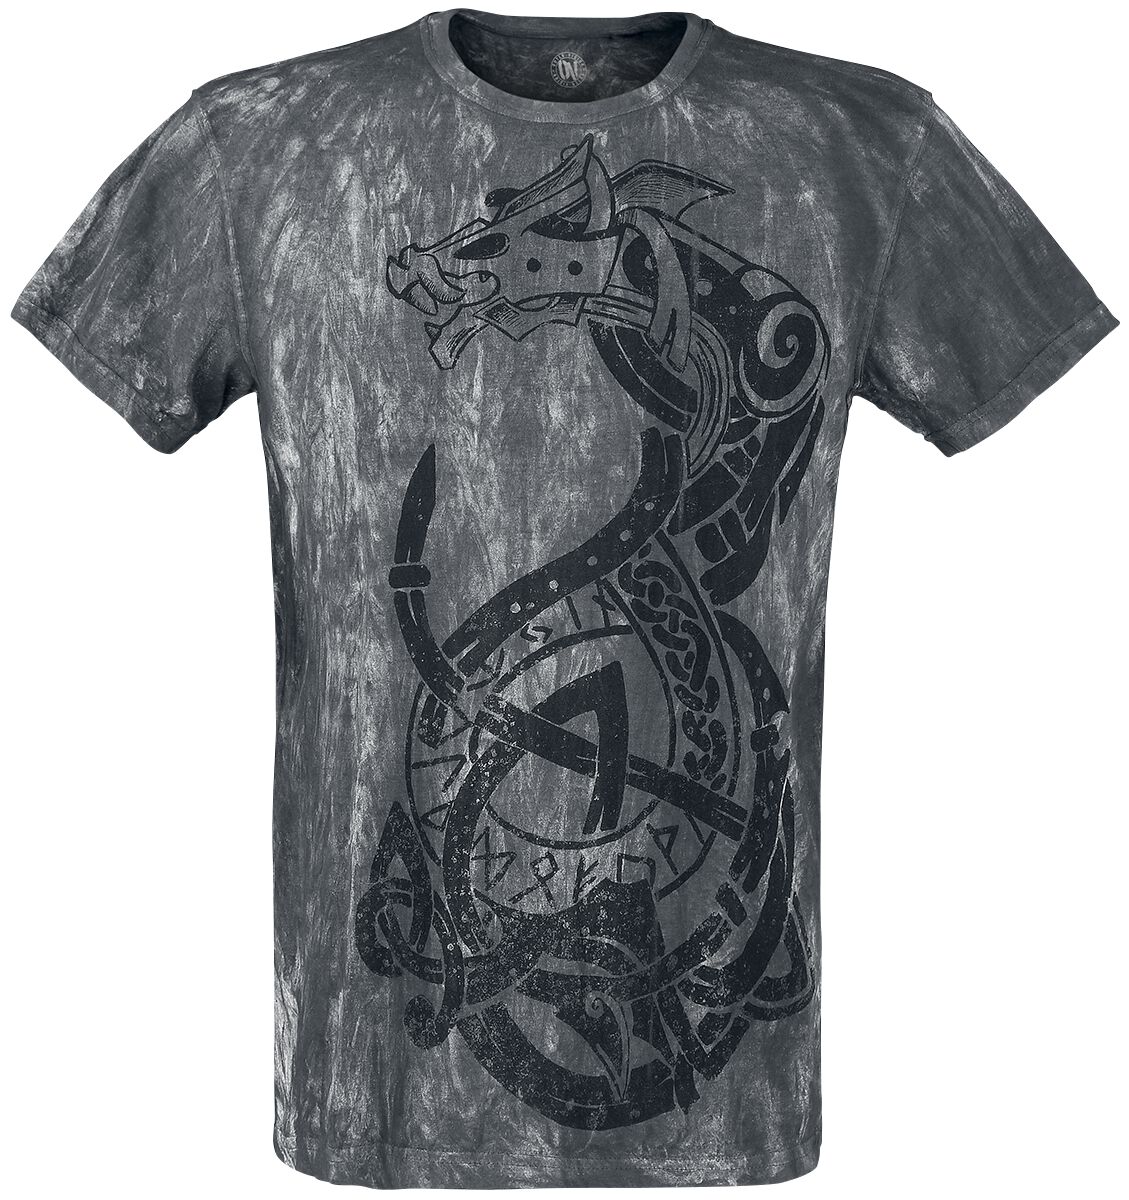 Outer Vision - Gothic T-Shirt - Viking Warrior - S bis 4XL - für Männer - Größe XL - grau